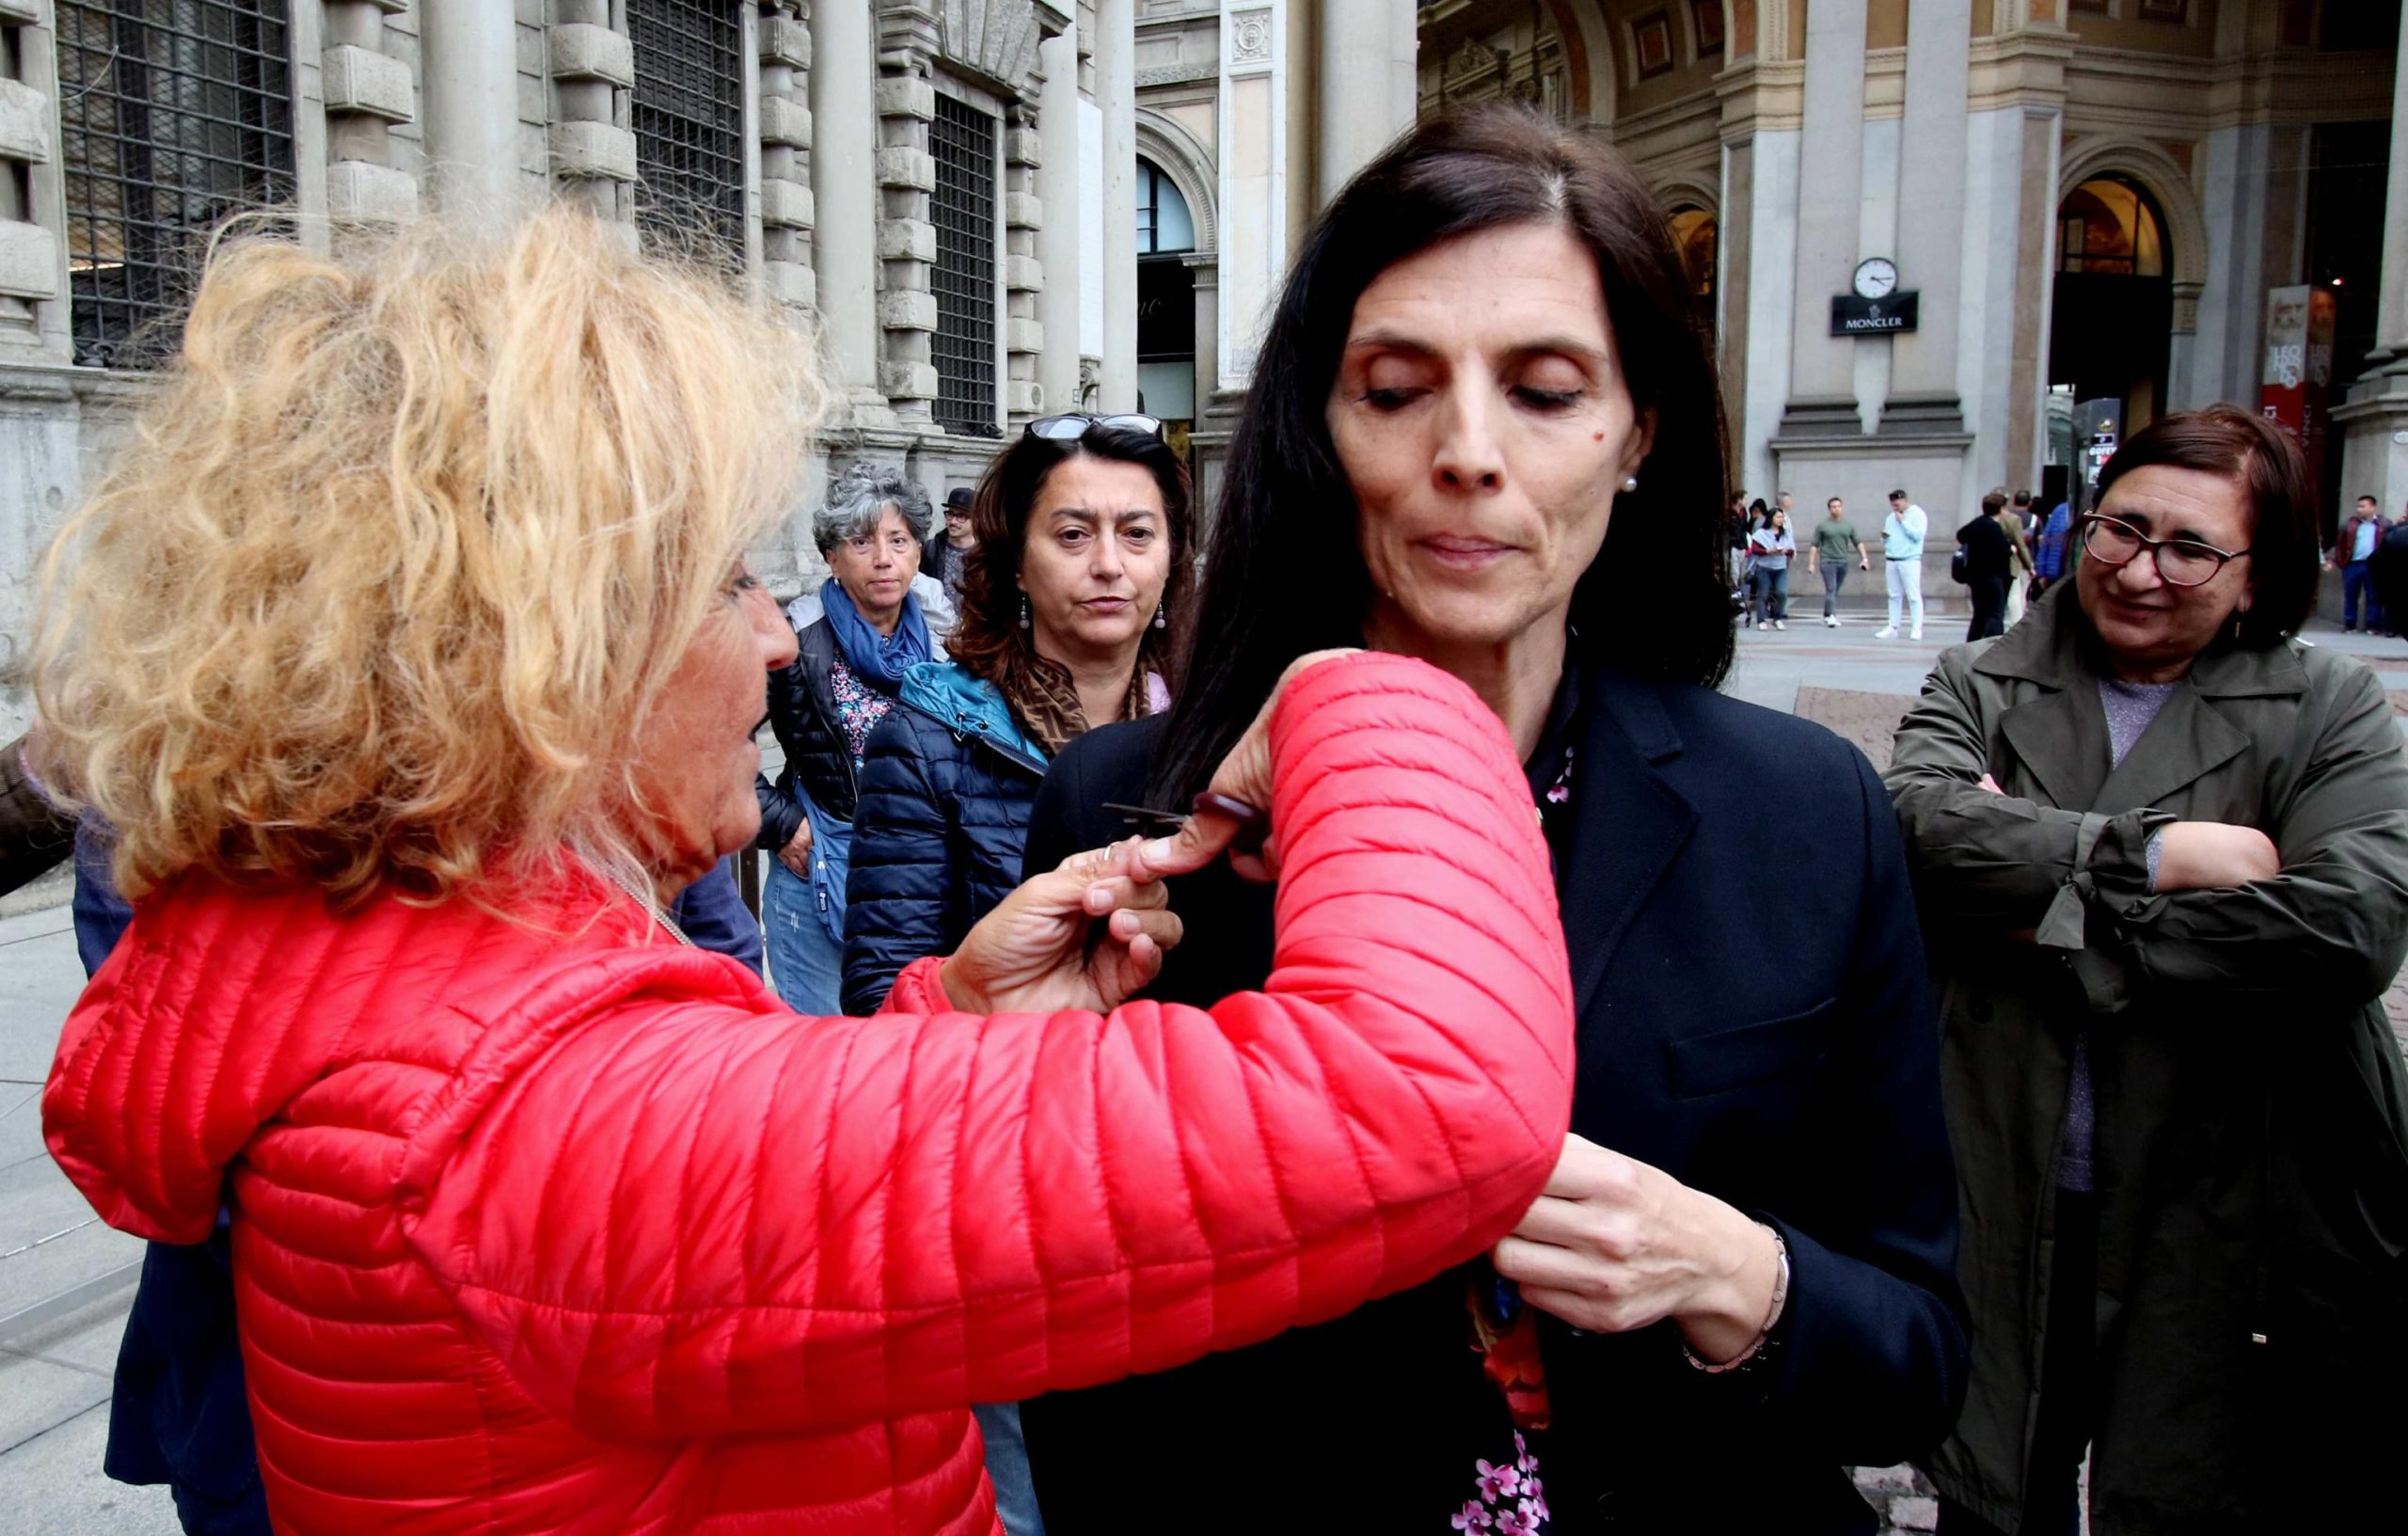 La consigliera comunale di Milano Diana De Marchi, insieme ad altre elette del Comune, si taglia una ciocca di capelli in solidarietà delle iraniane in lotta per la morte di Masha Amini